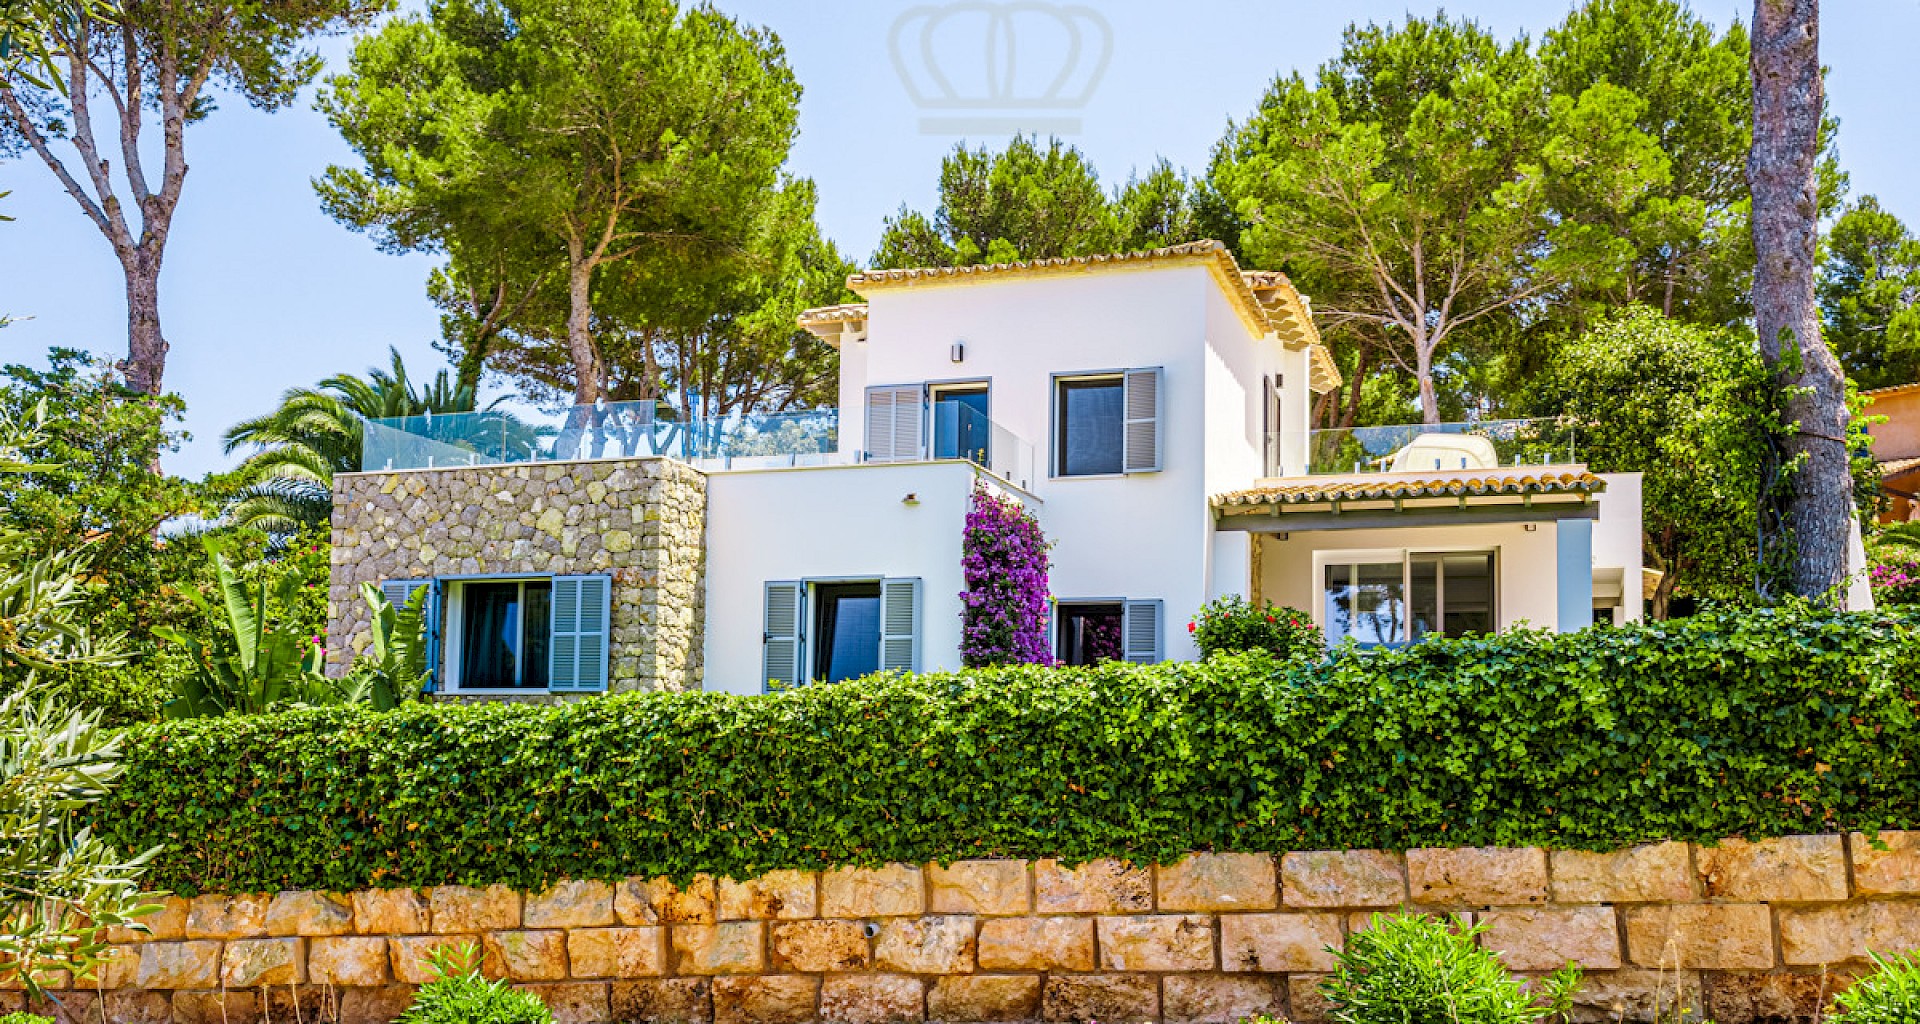 KROHN & LUEDEMANN Luxury family villa in Santa Ponsa with pool and garden Villa in Santa Ponsa mit Pool und Garten 32